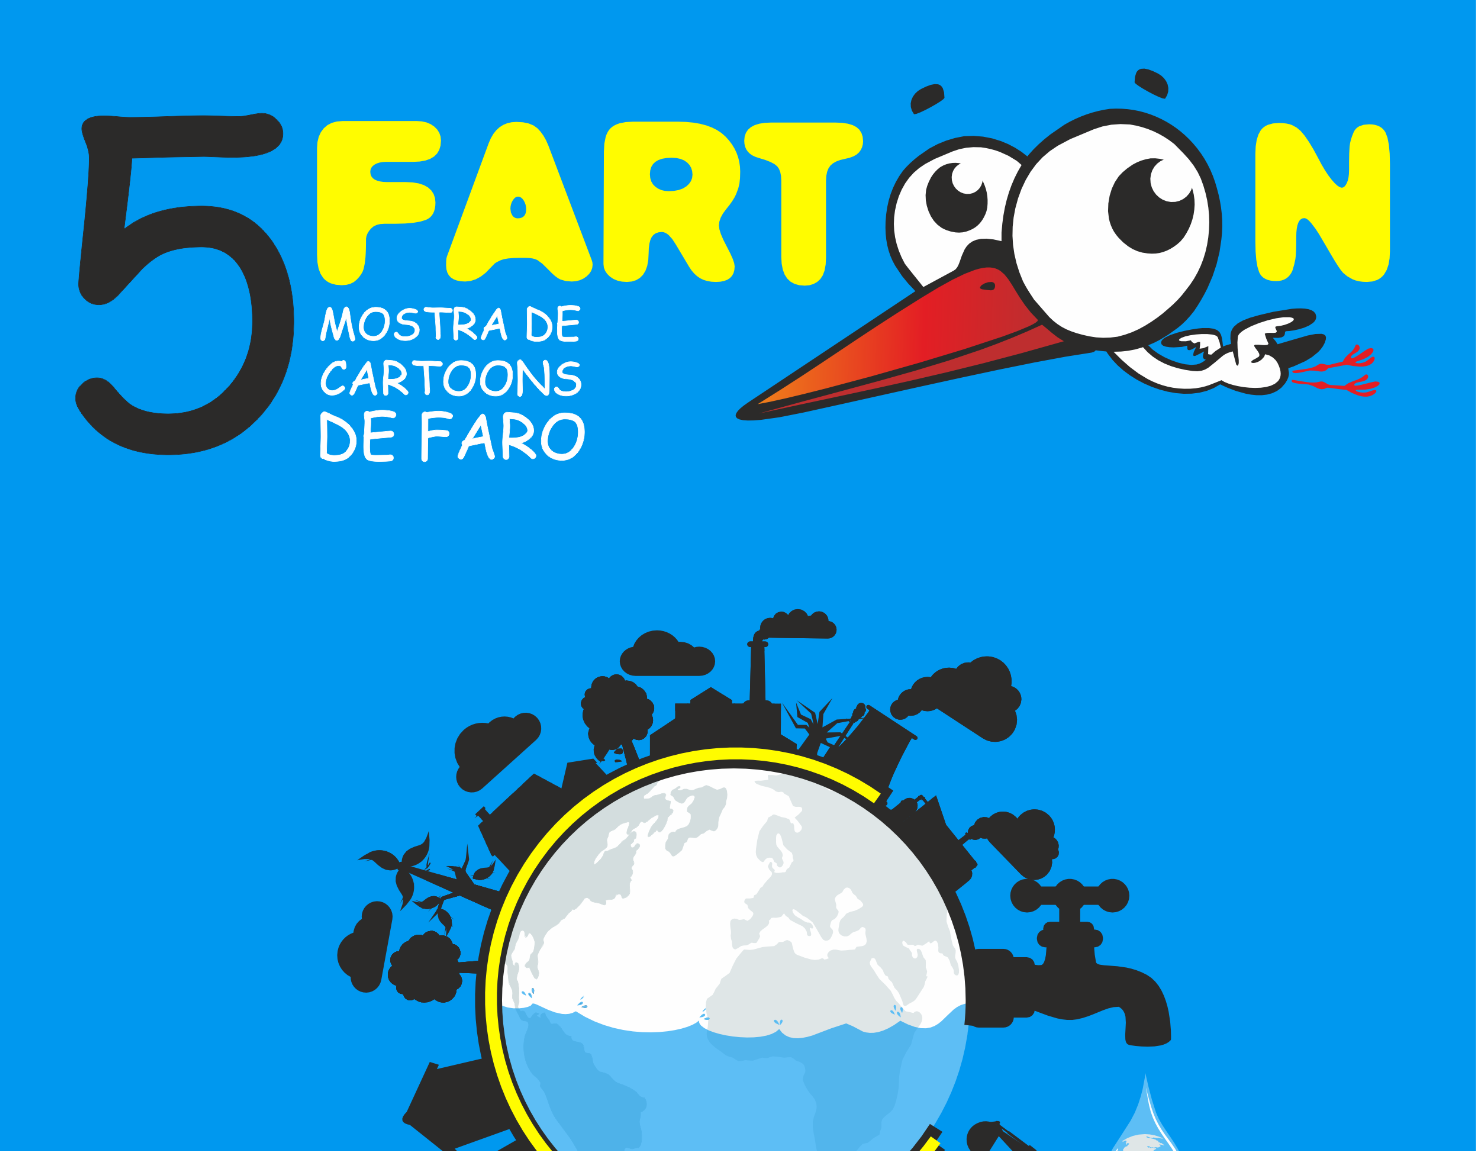 Abertura de Inscrições para a 5.ª Edição do Fartoon - Mostra Internacional de Cartoons de Faro